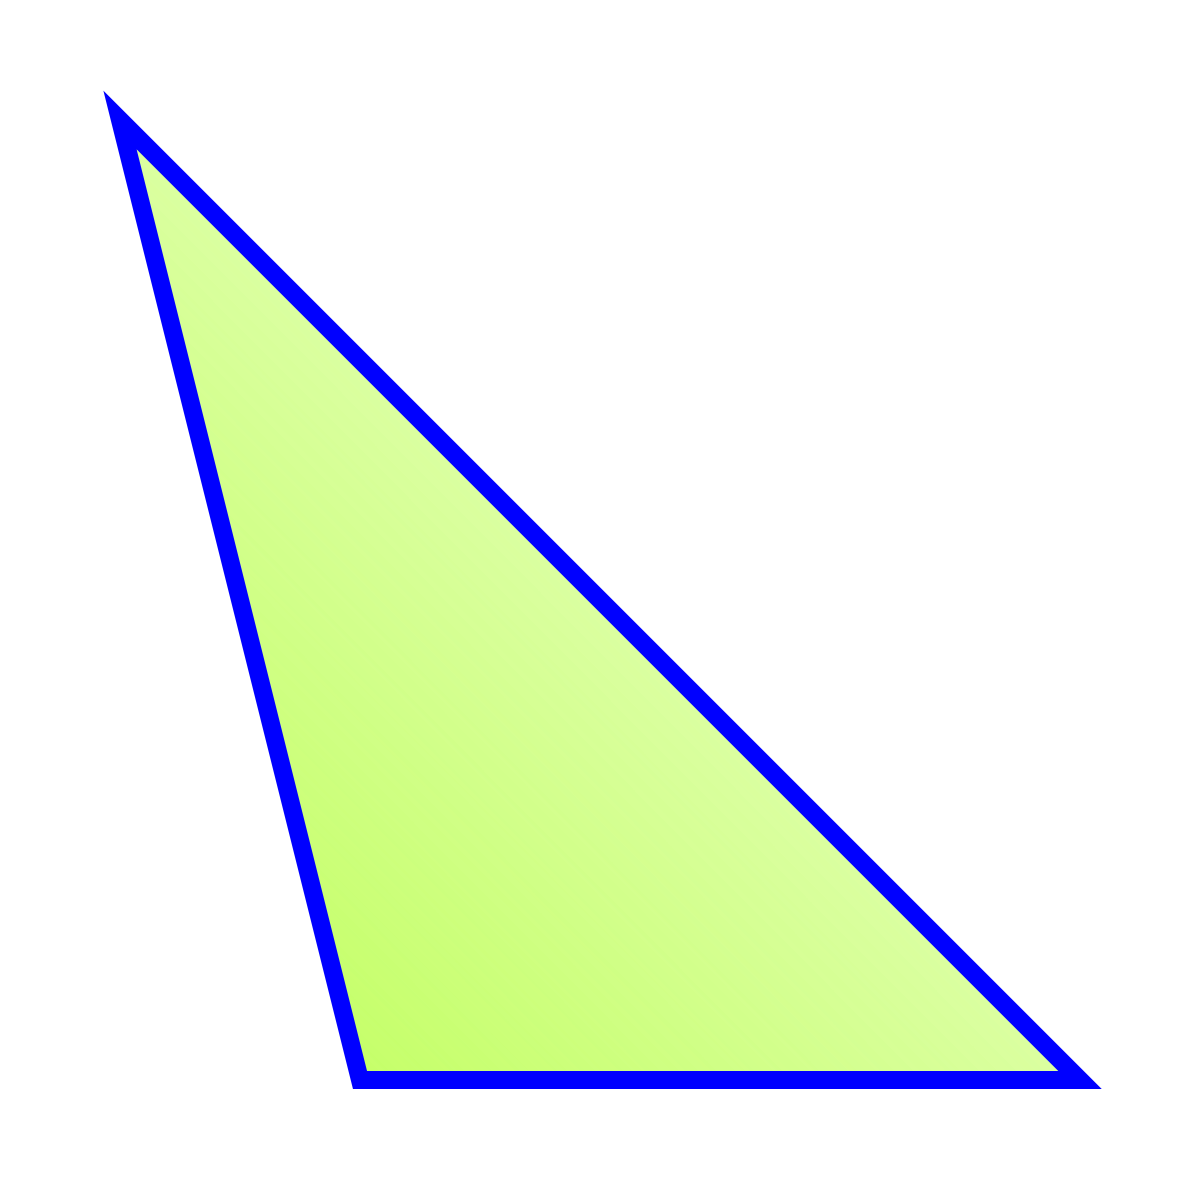 Archivo:Triángulo obtusángulo escaleno.svg - Wikipedia, la ...